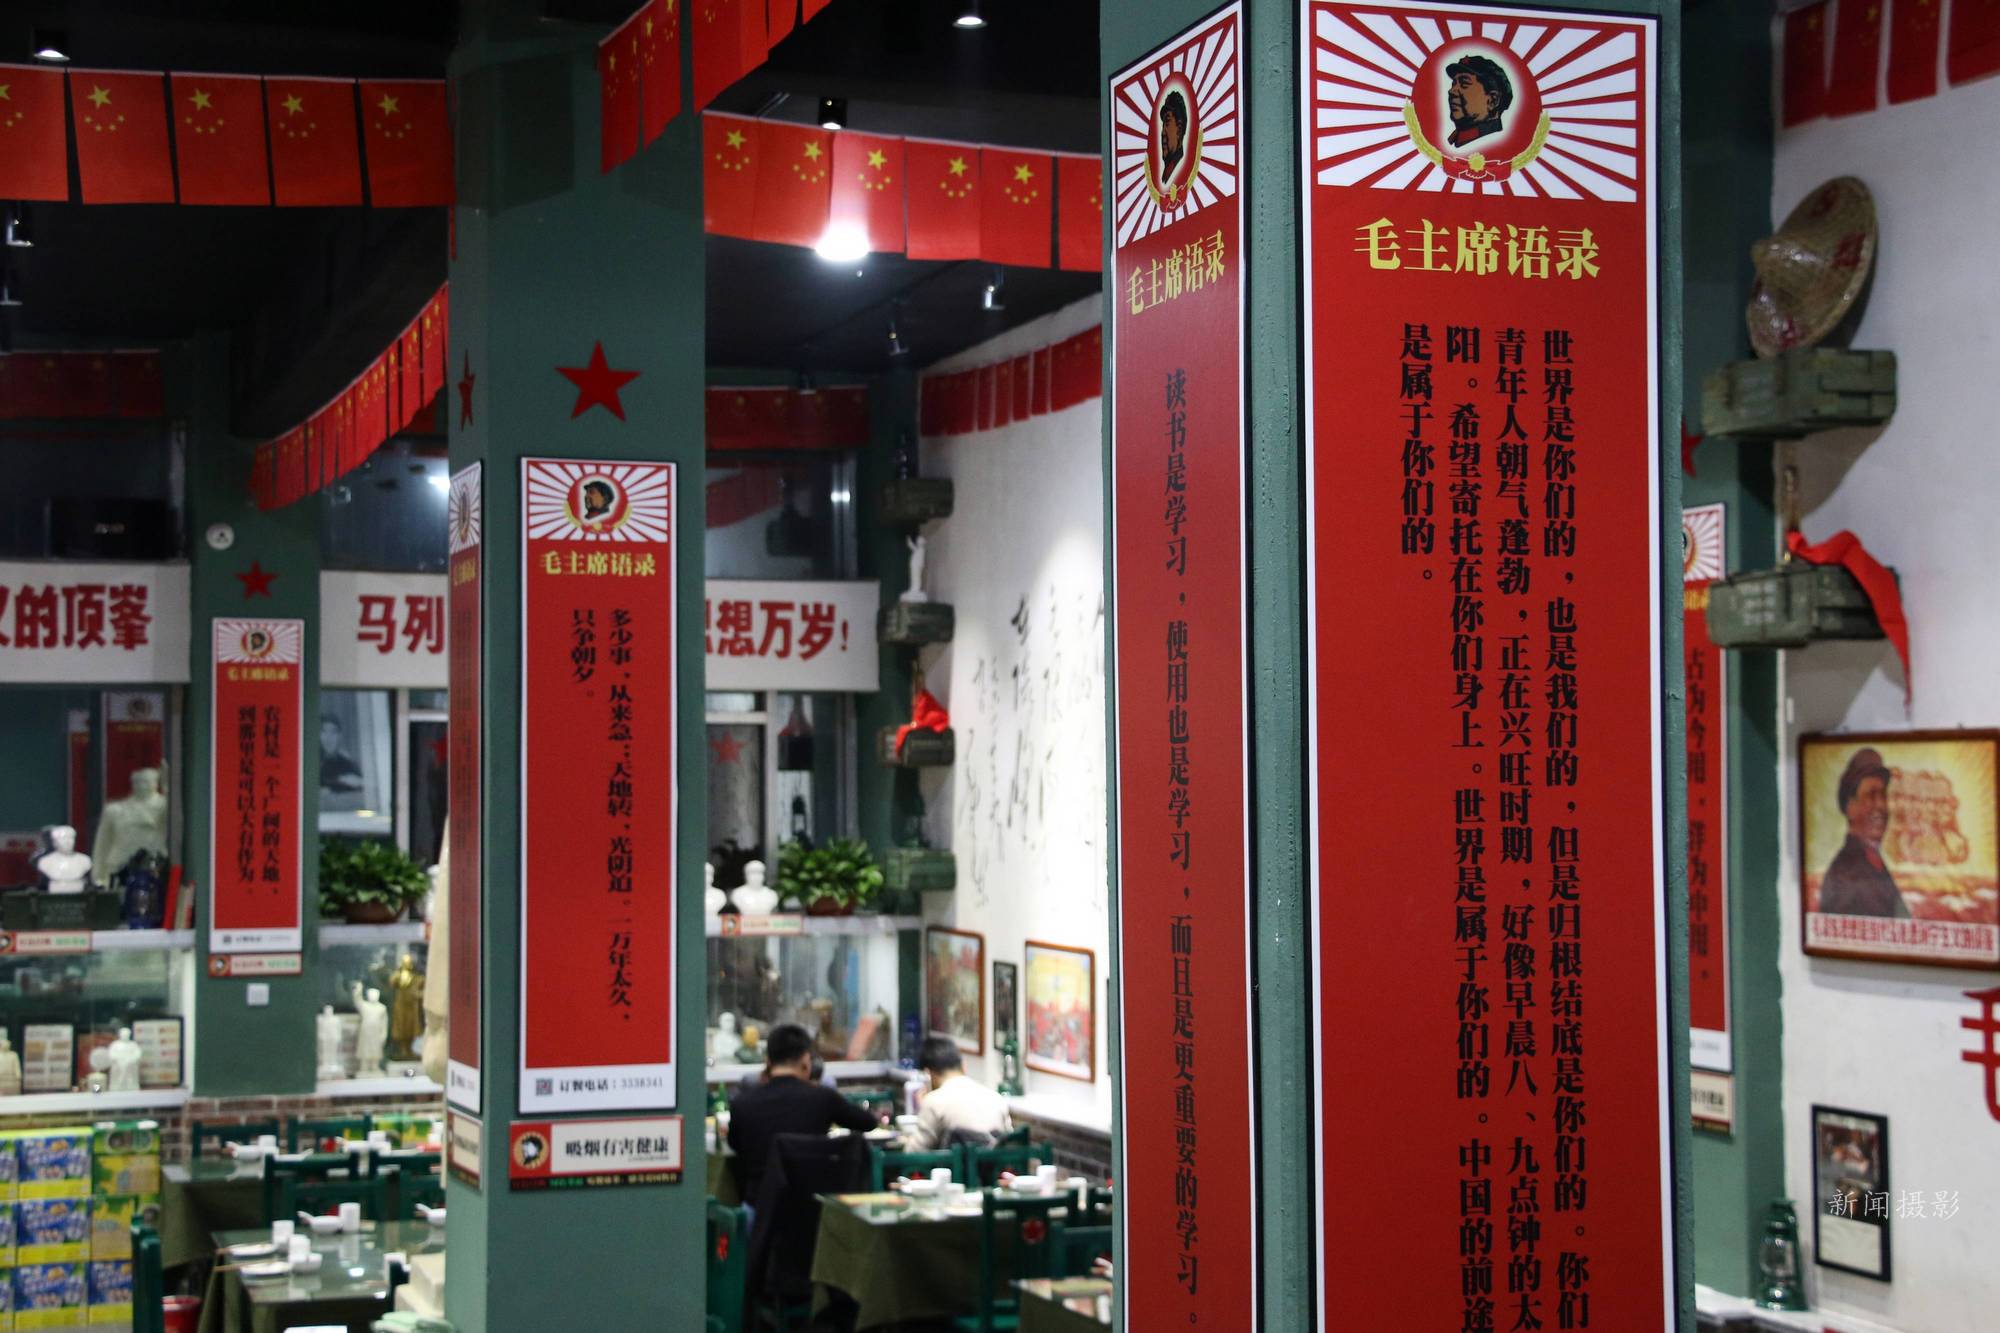 山东现红色主题餐厅 服务员扮小兵墙上贴宣传画